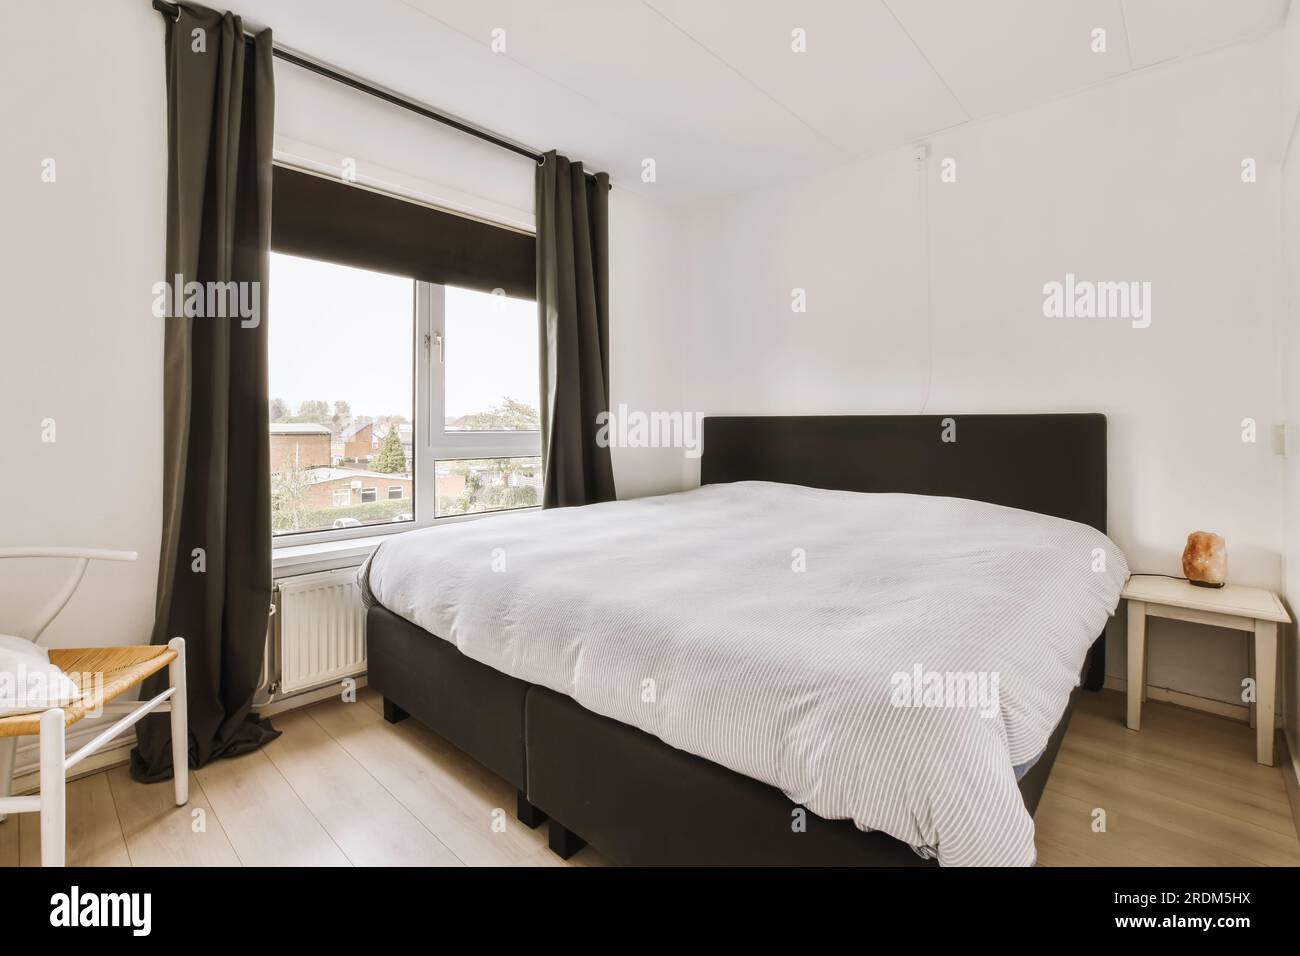 un dormitorio con paredes blancas y cortinas negras en la ventana